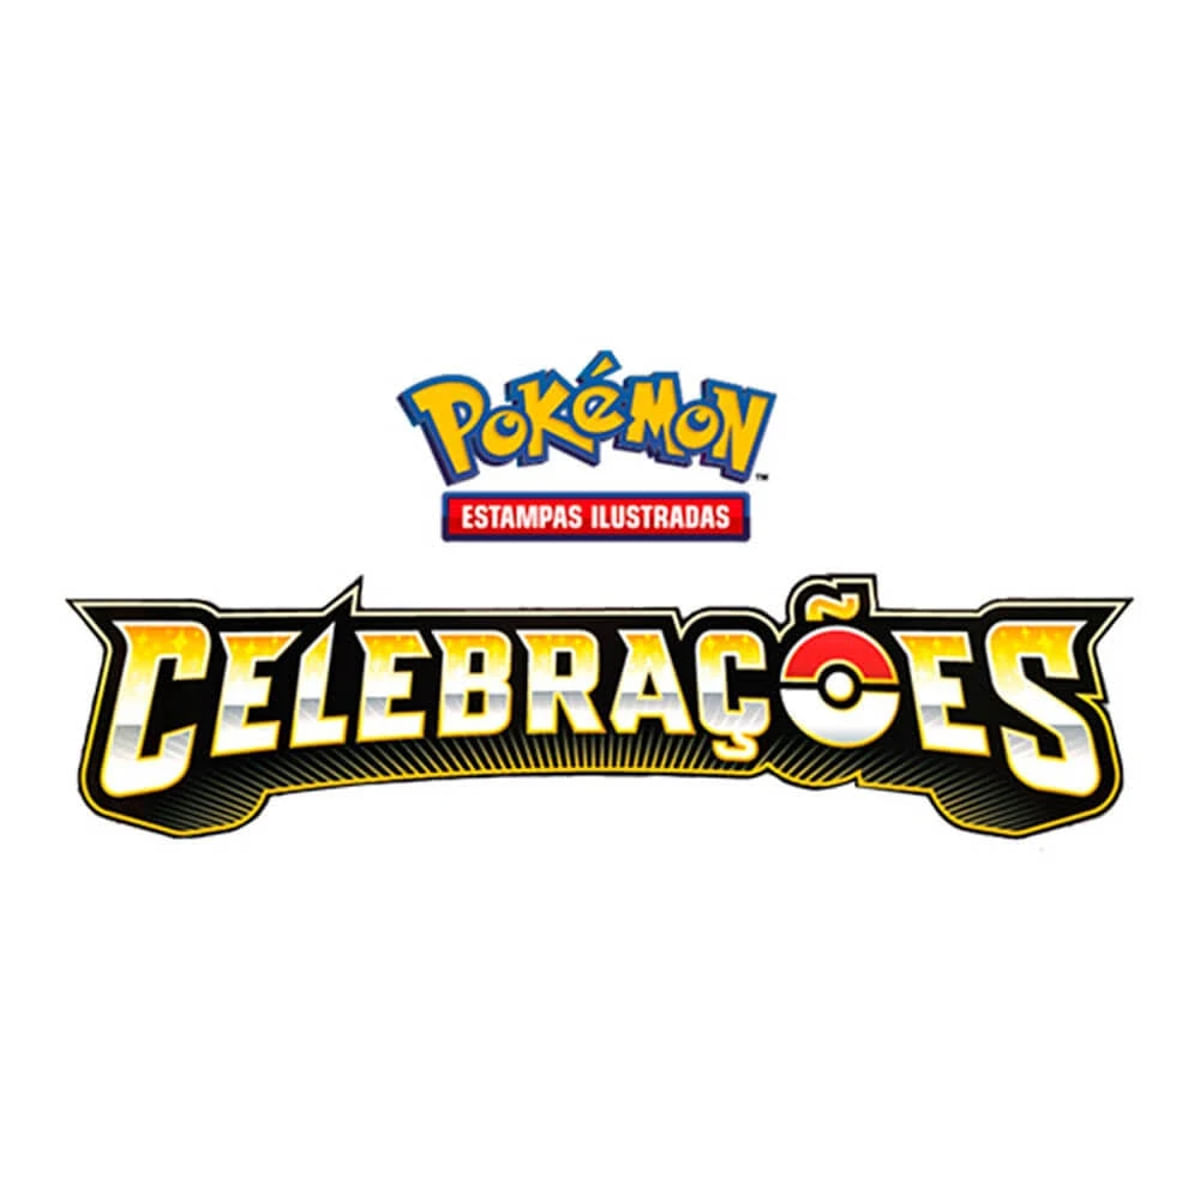 Kit 101 Cartas Pokémon, Promoçoes e Ofertas